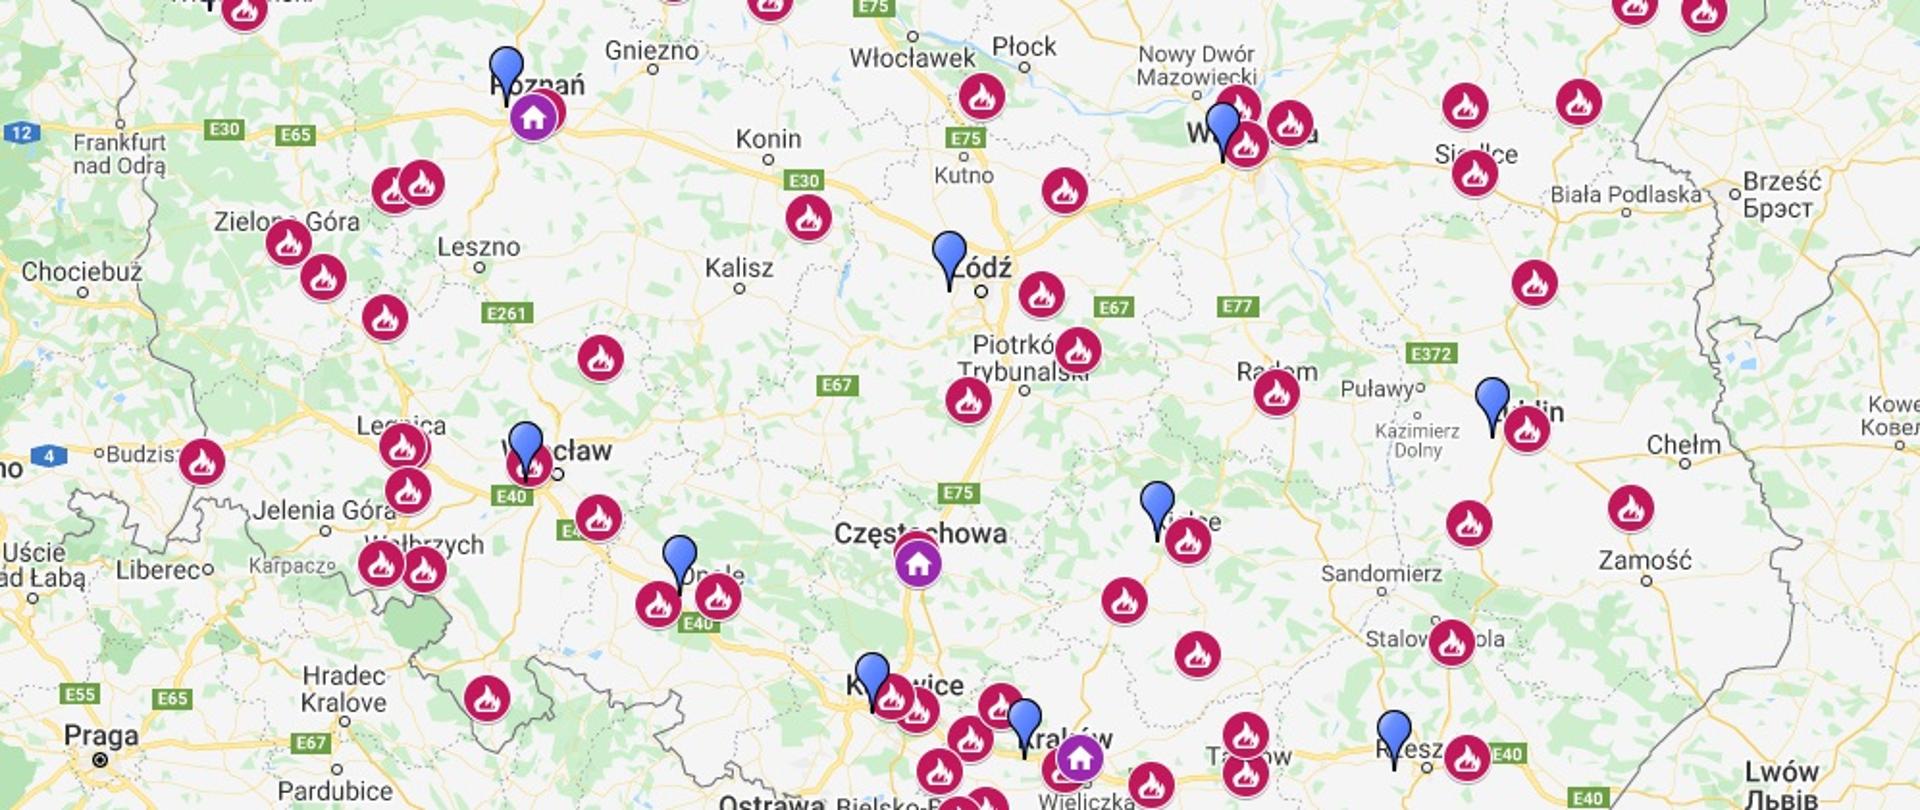 Zdjęcie przedstawia wycinek mapy Polski na jasnym tle z zaznaczonymi salami edukacyjnymi "Ognik" znajdującymi się w poszczególnych miejscowościach